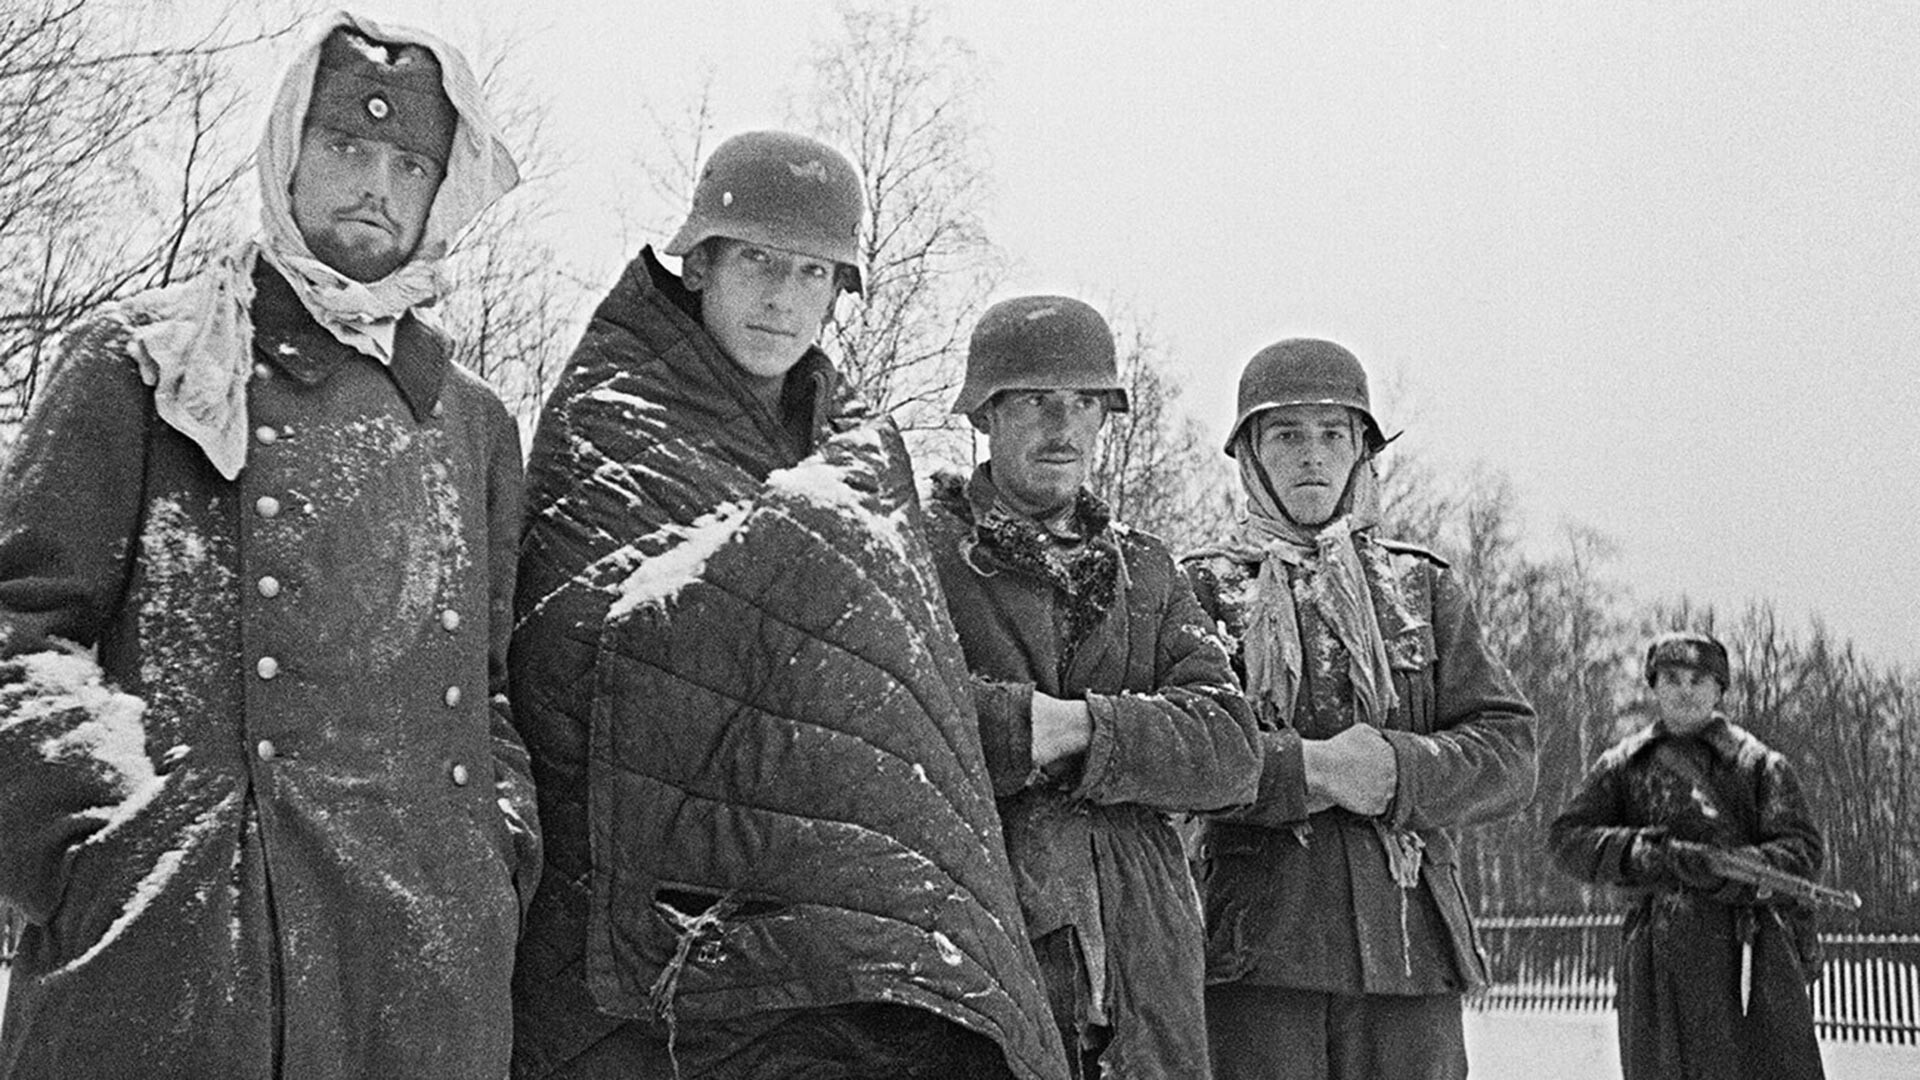 Des Allemands capturés par l'Armée rouge près de Moscou en décembre 1941